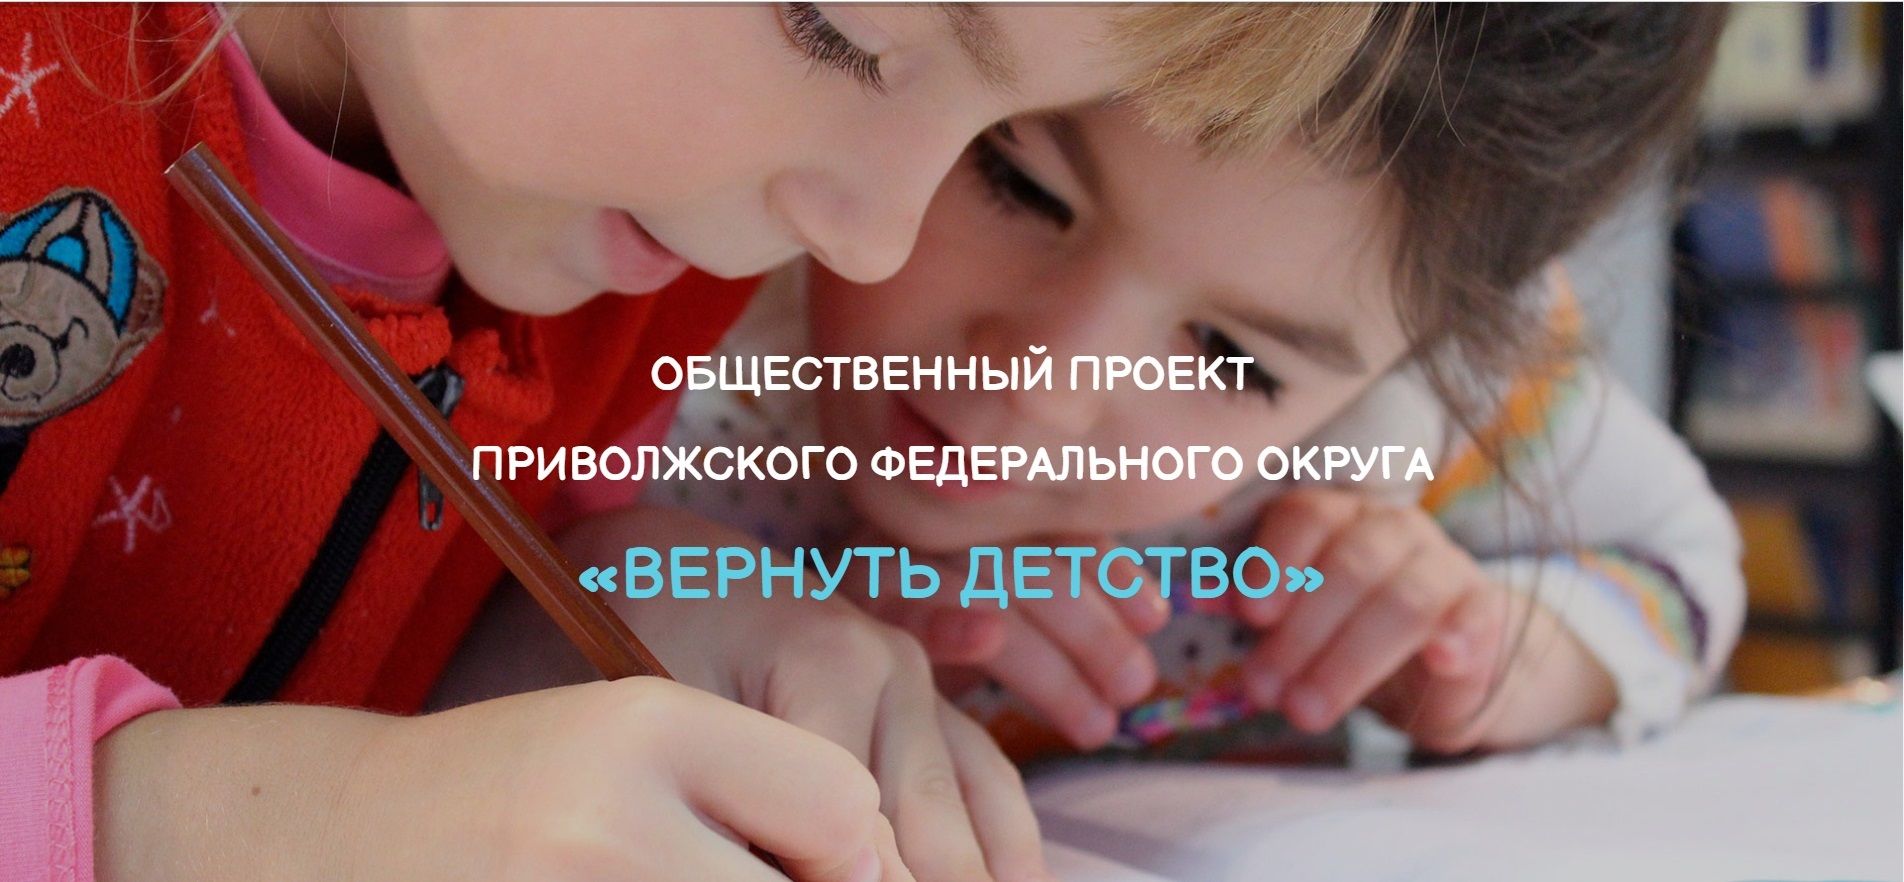 17 воспитанников татарстанских детдомов выступят на онлайн-фестивале ПФО